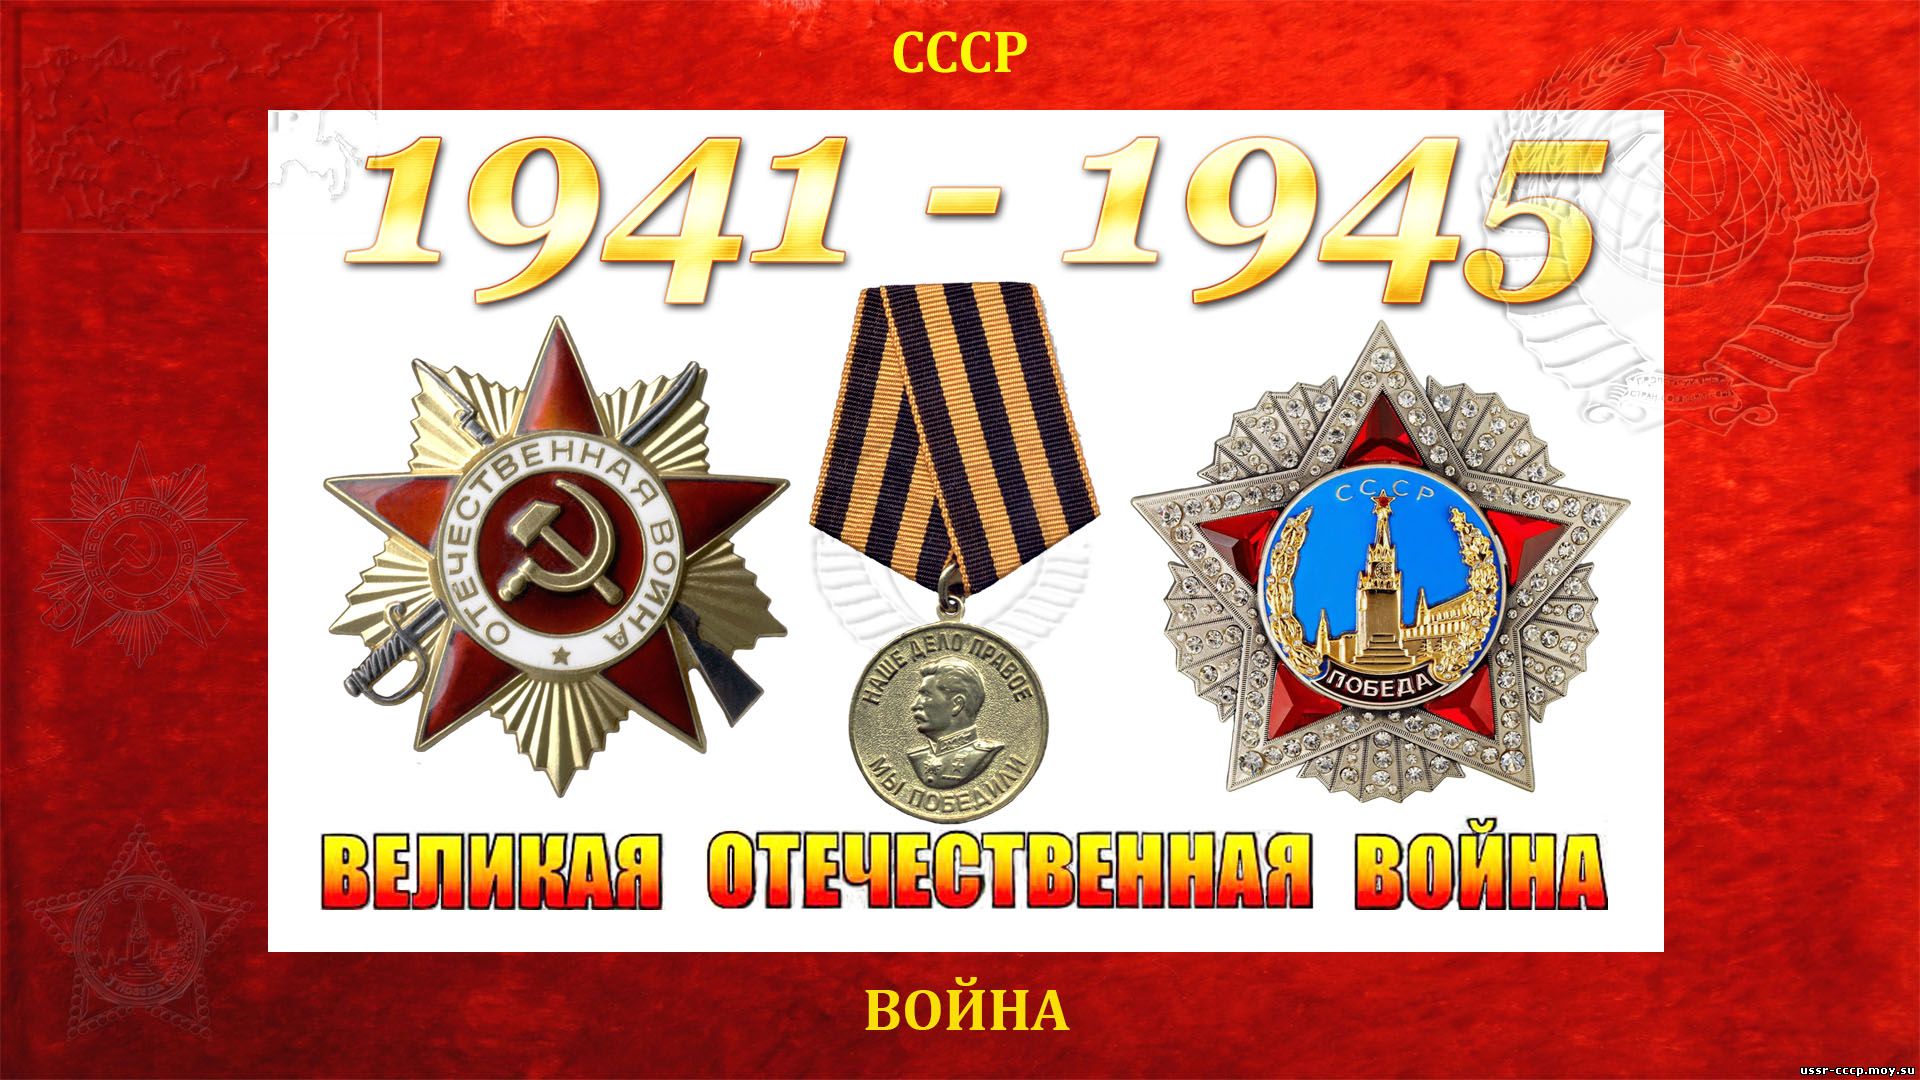 Великая Отечественная война — СССР—Германия (22.06.1941 — 09.05.1945) полное повествование))